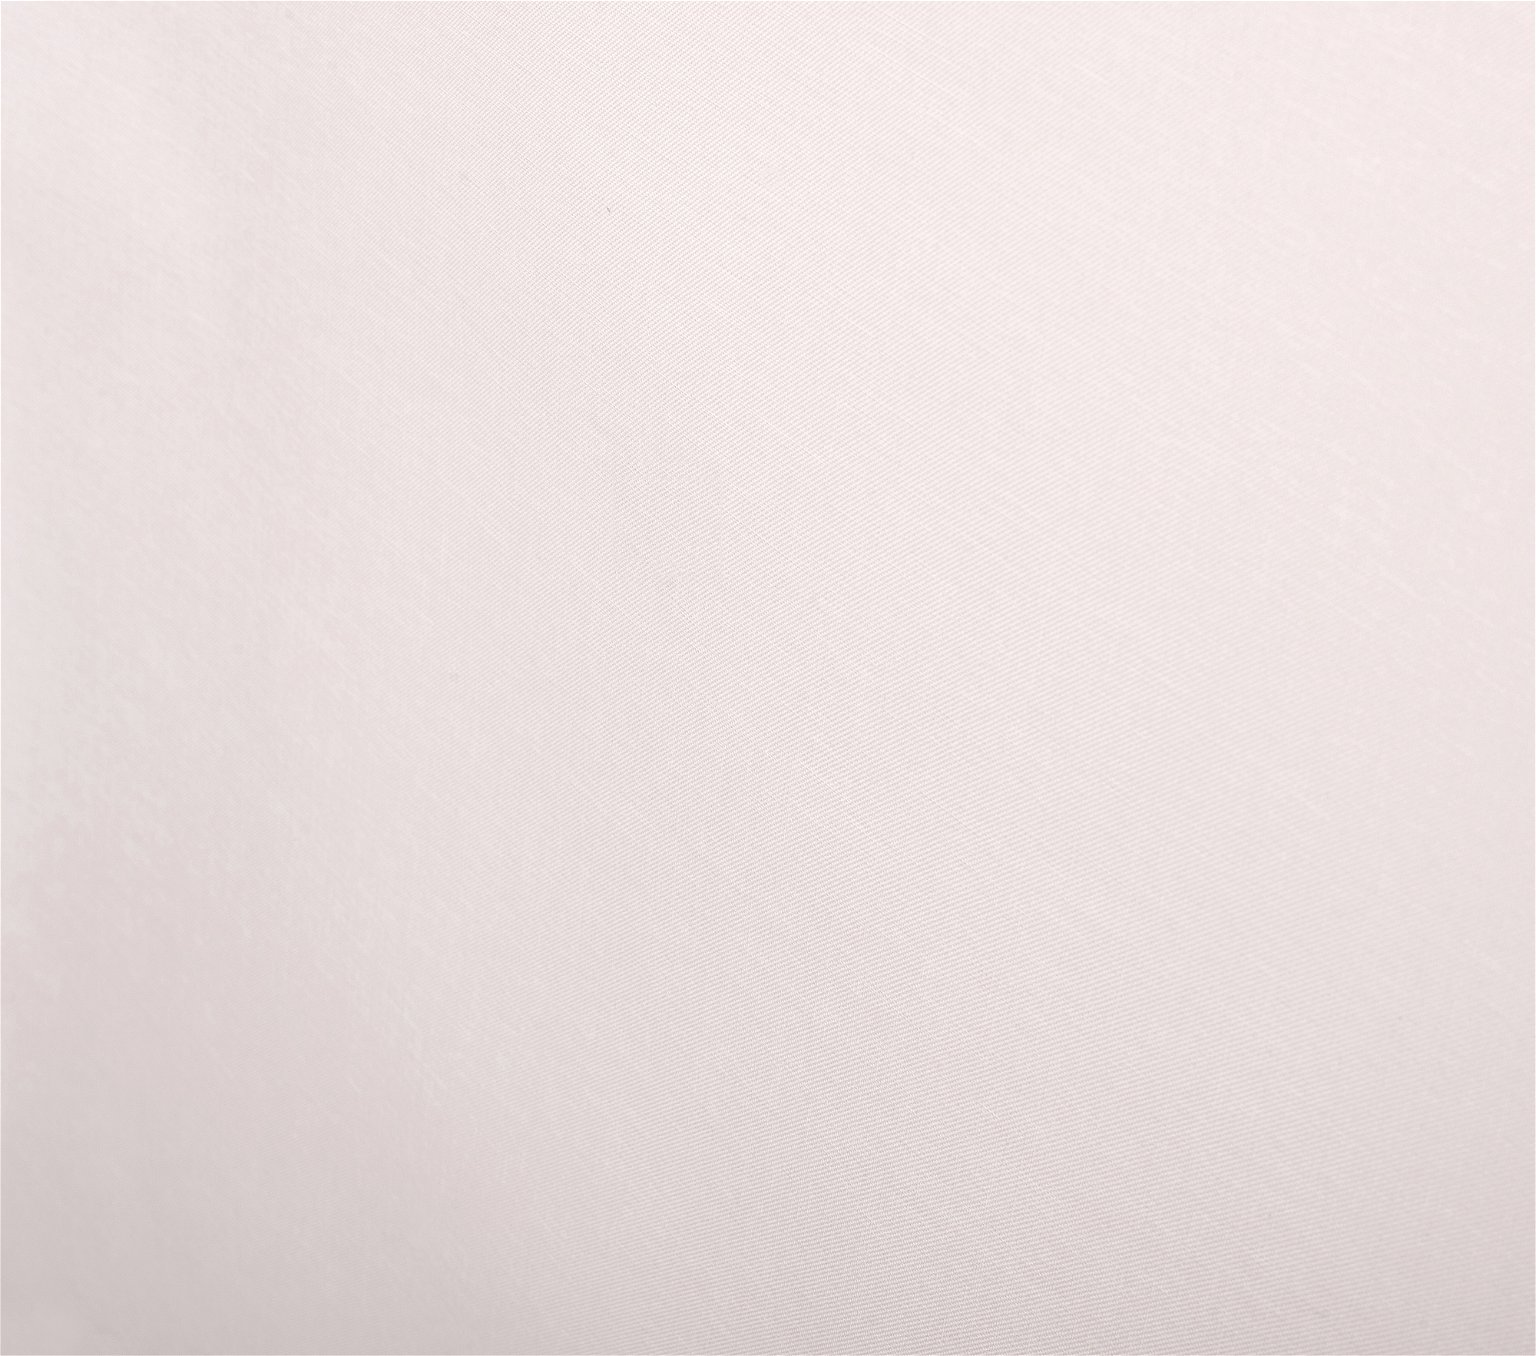 Klasikinė ritininė užuolaida MILAN, kreminės sp., 60 x 170 cm, 100 % poliesteris - 4